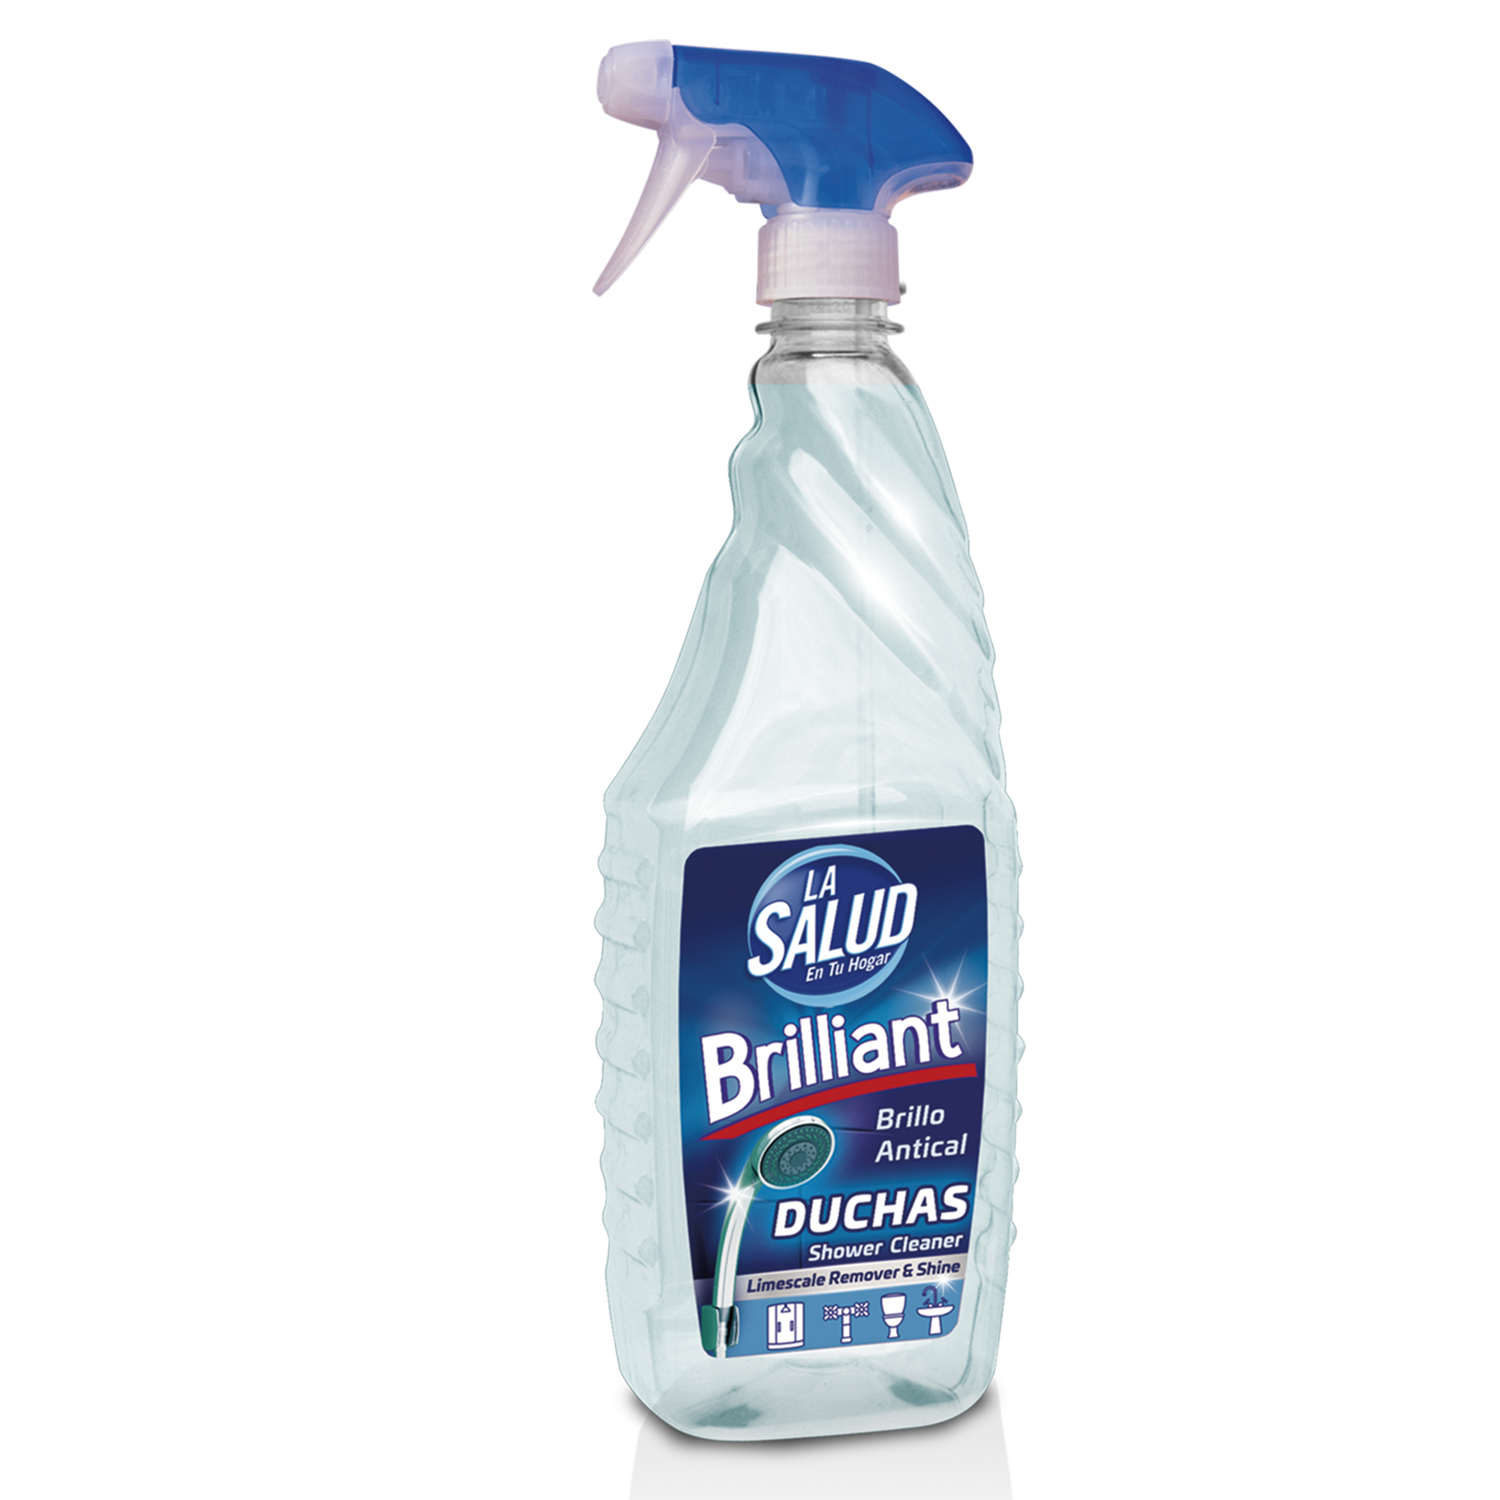 NORIT Sensible - Detergente Líquido Hipoalergénico sin perfume, para Pieles  Sensibles y Atópicas, Apto para Adultos, Niños y Bebés, Pack de 3 X 2120  Ml, 6360 Mililitros- PACK 3 UNIDADES